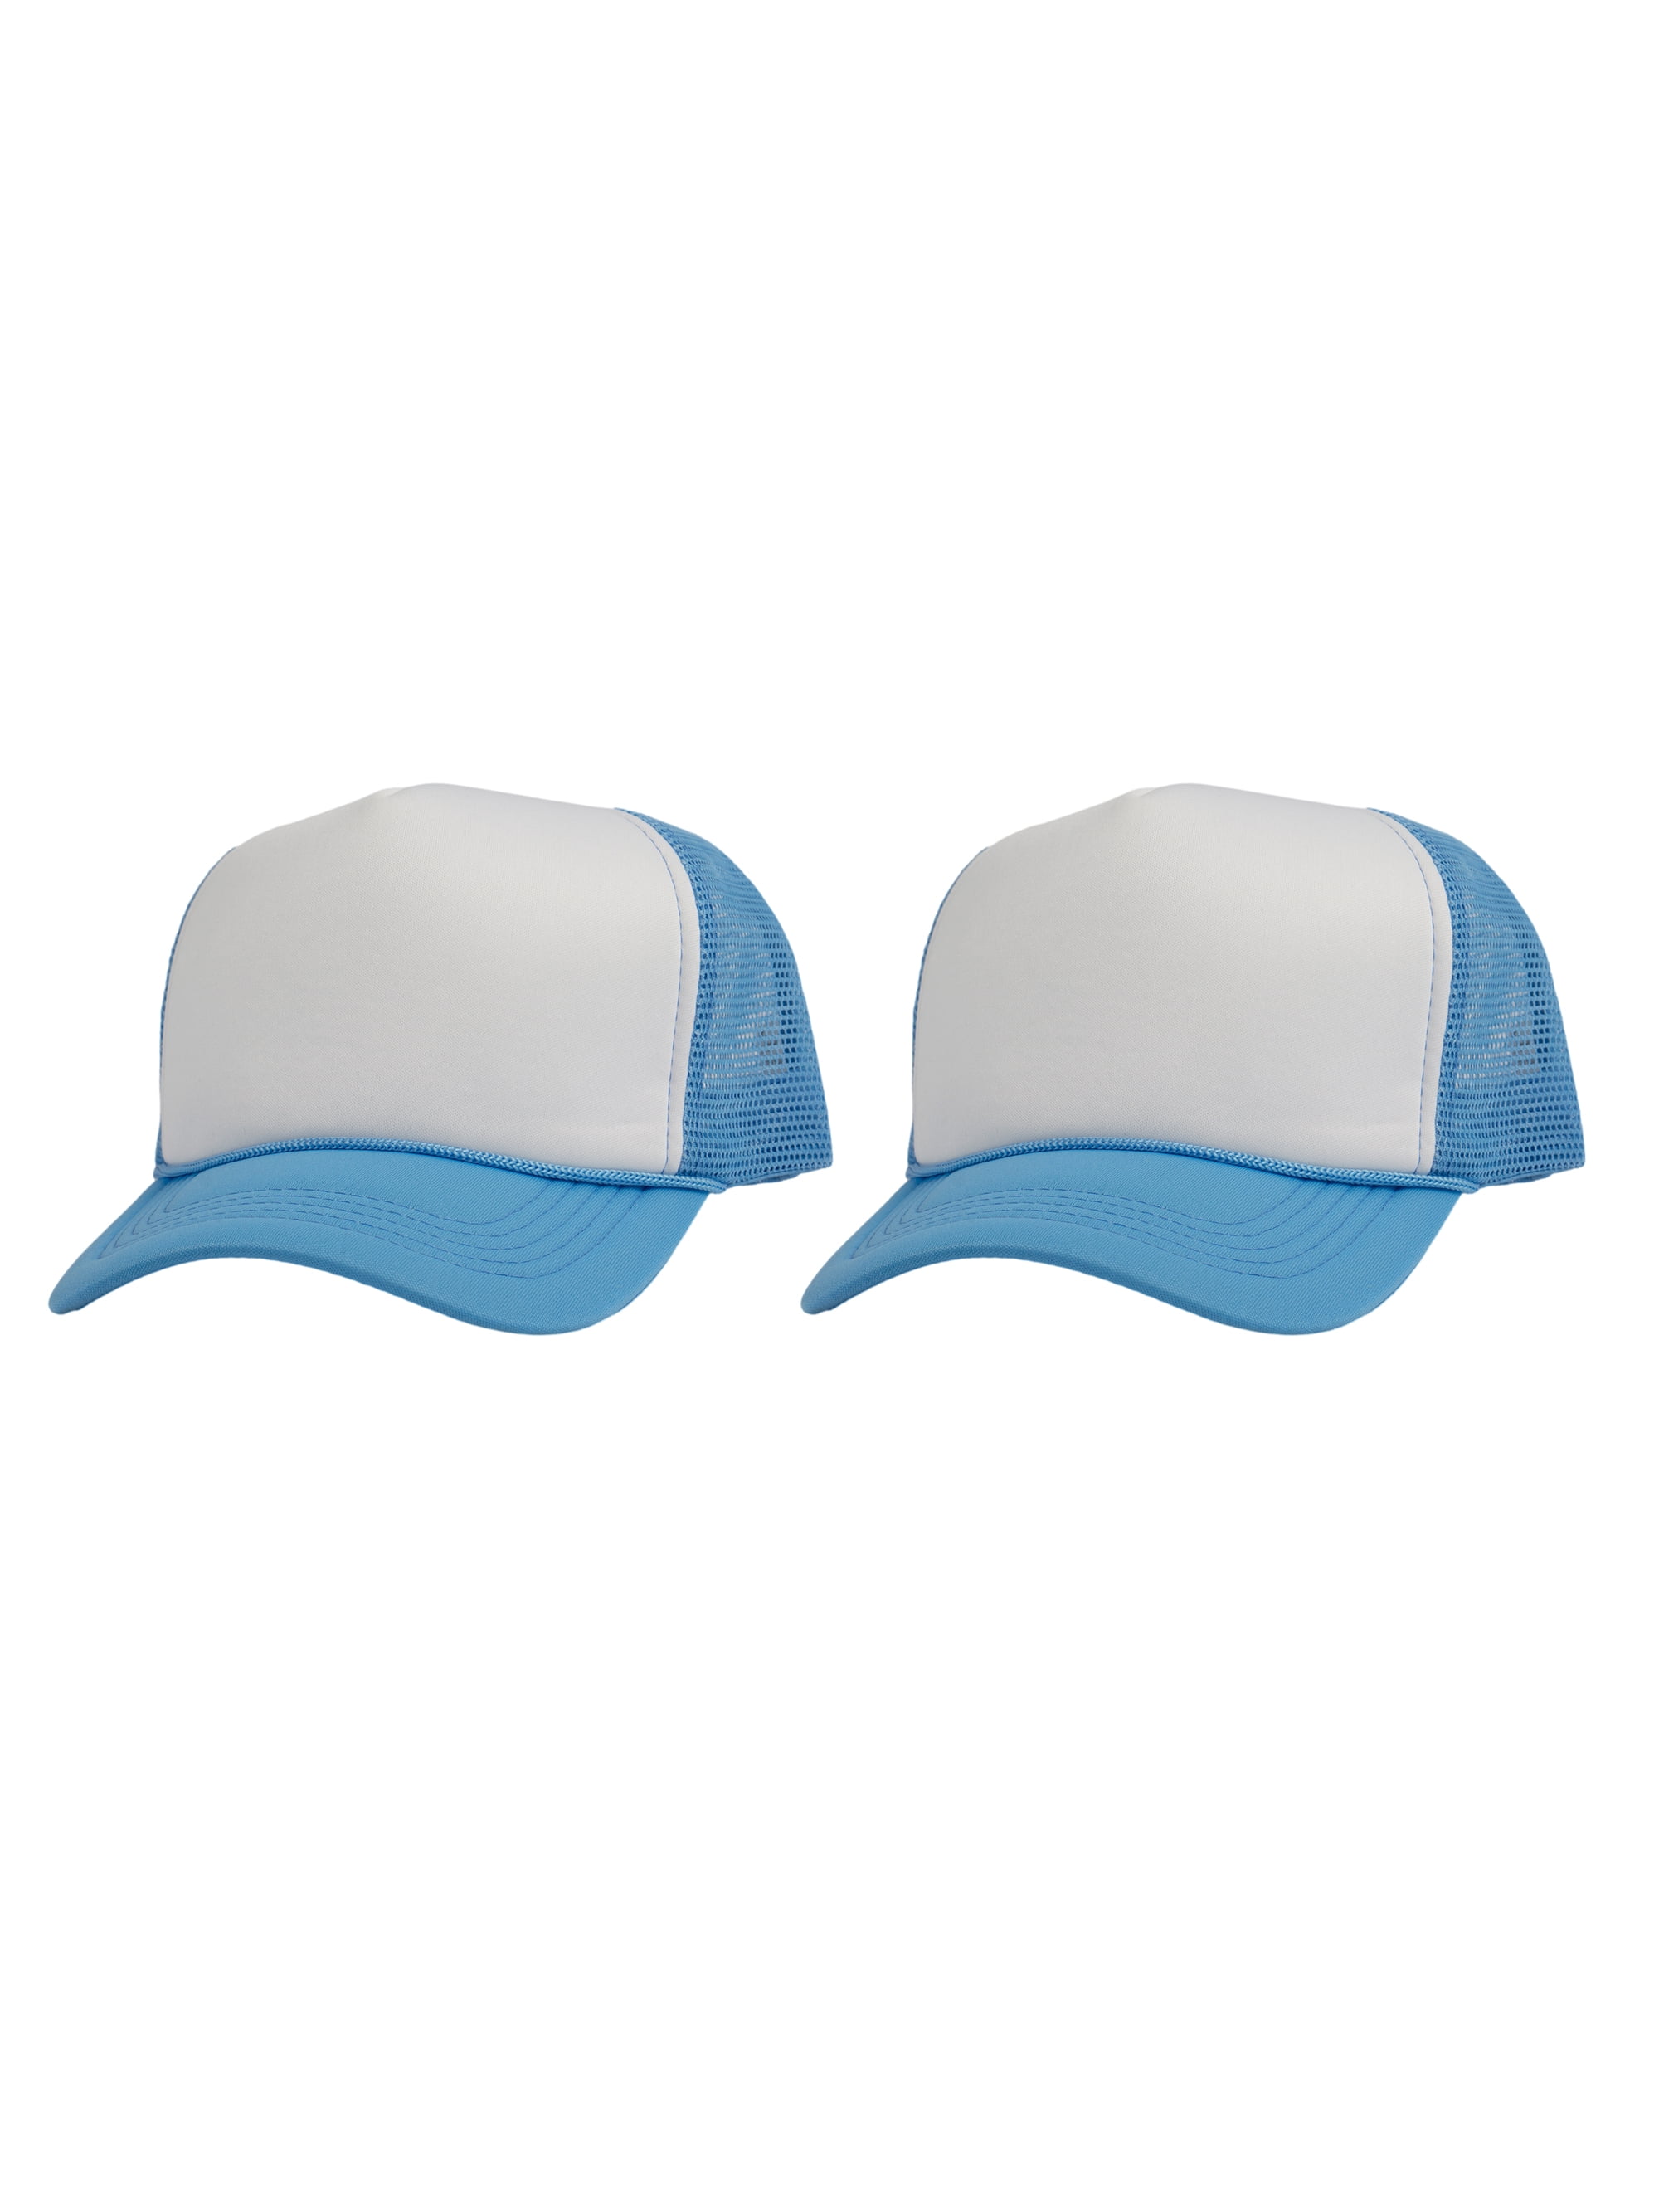 Top Headwear Men's Blank Rope Trucker Foam Mesh Plain Hats, 2PC White/Sky  Blue